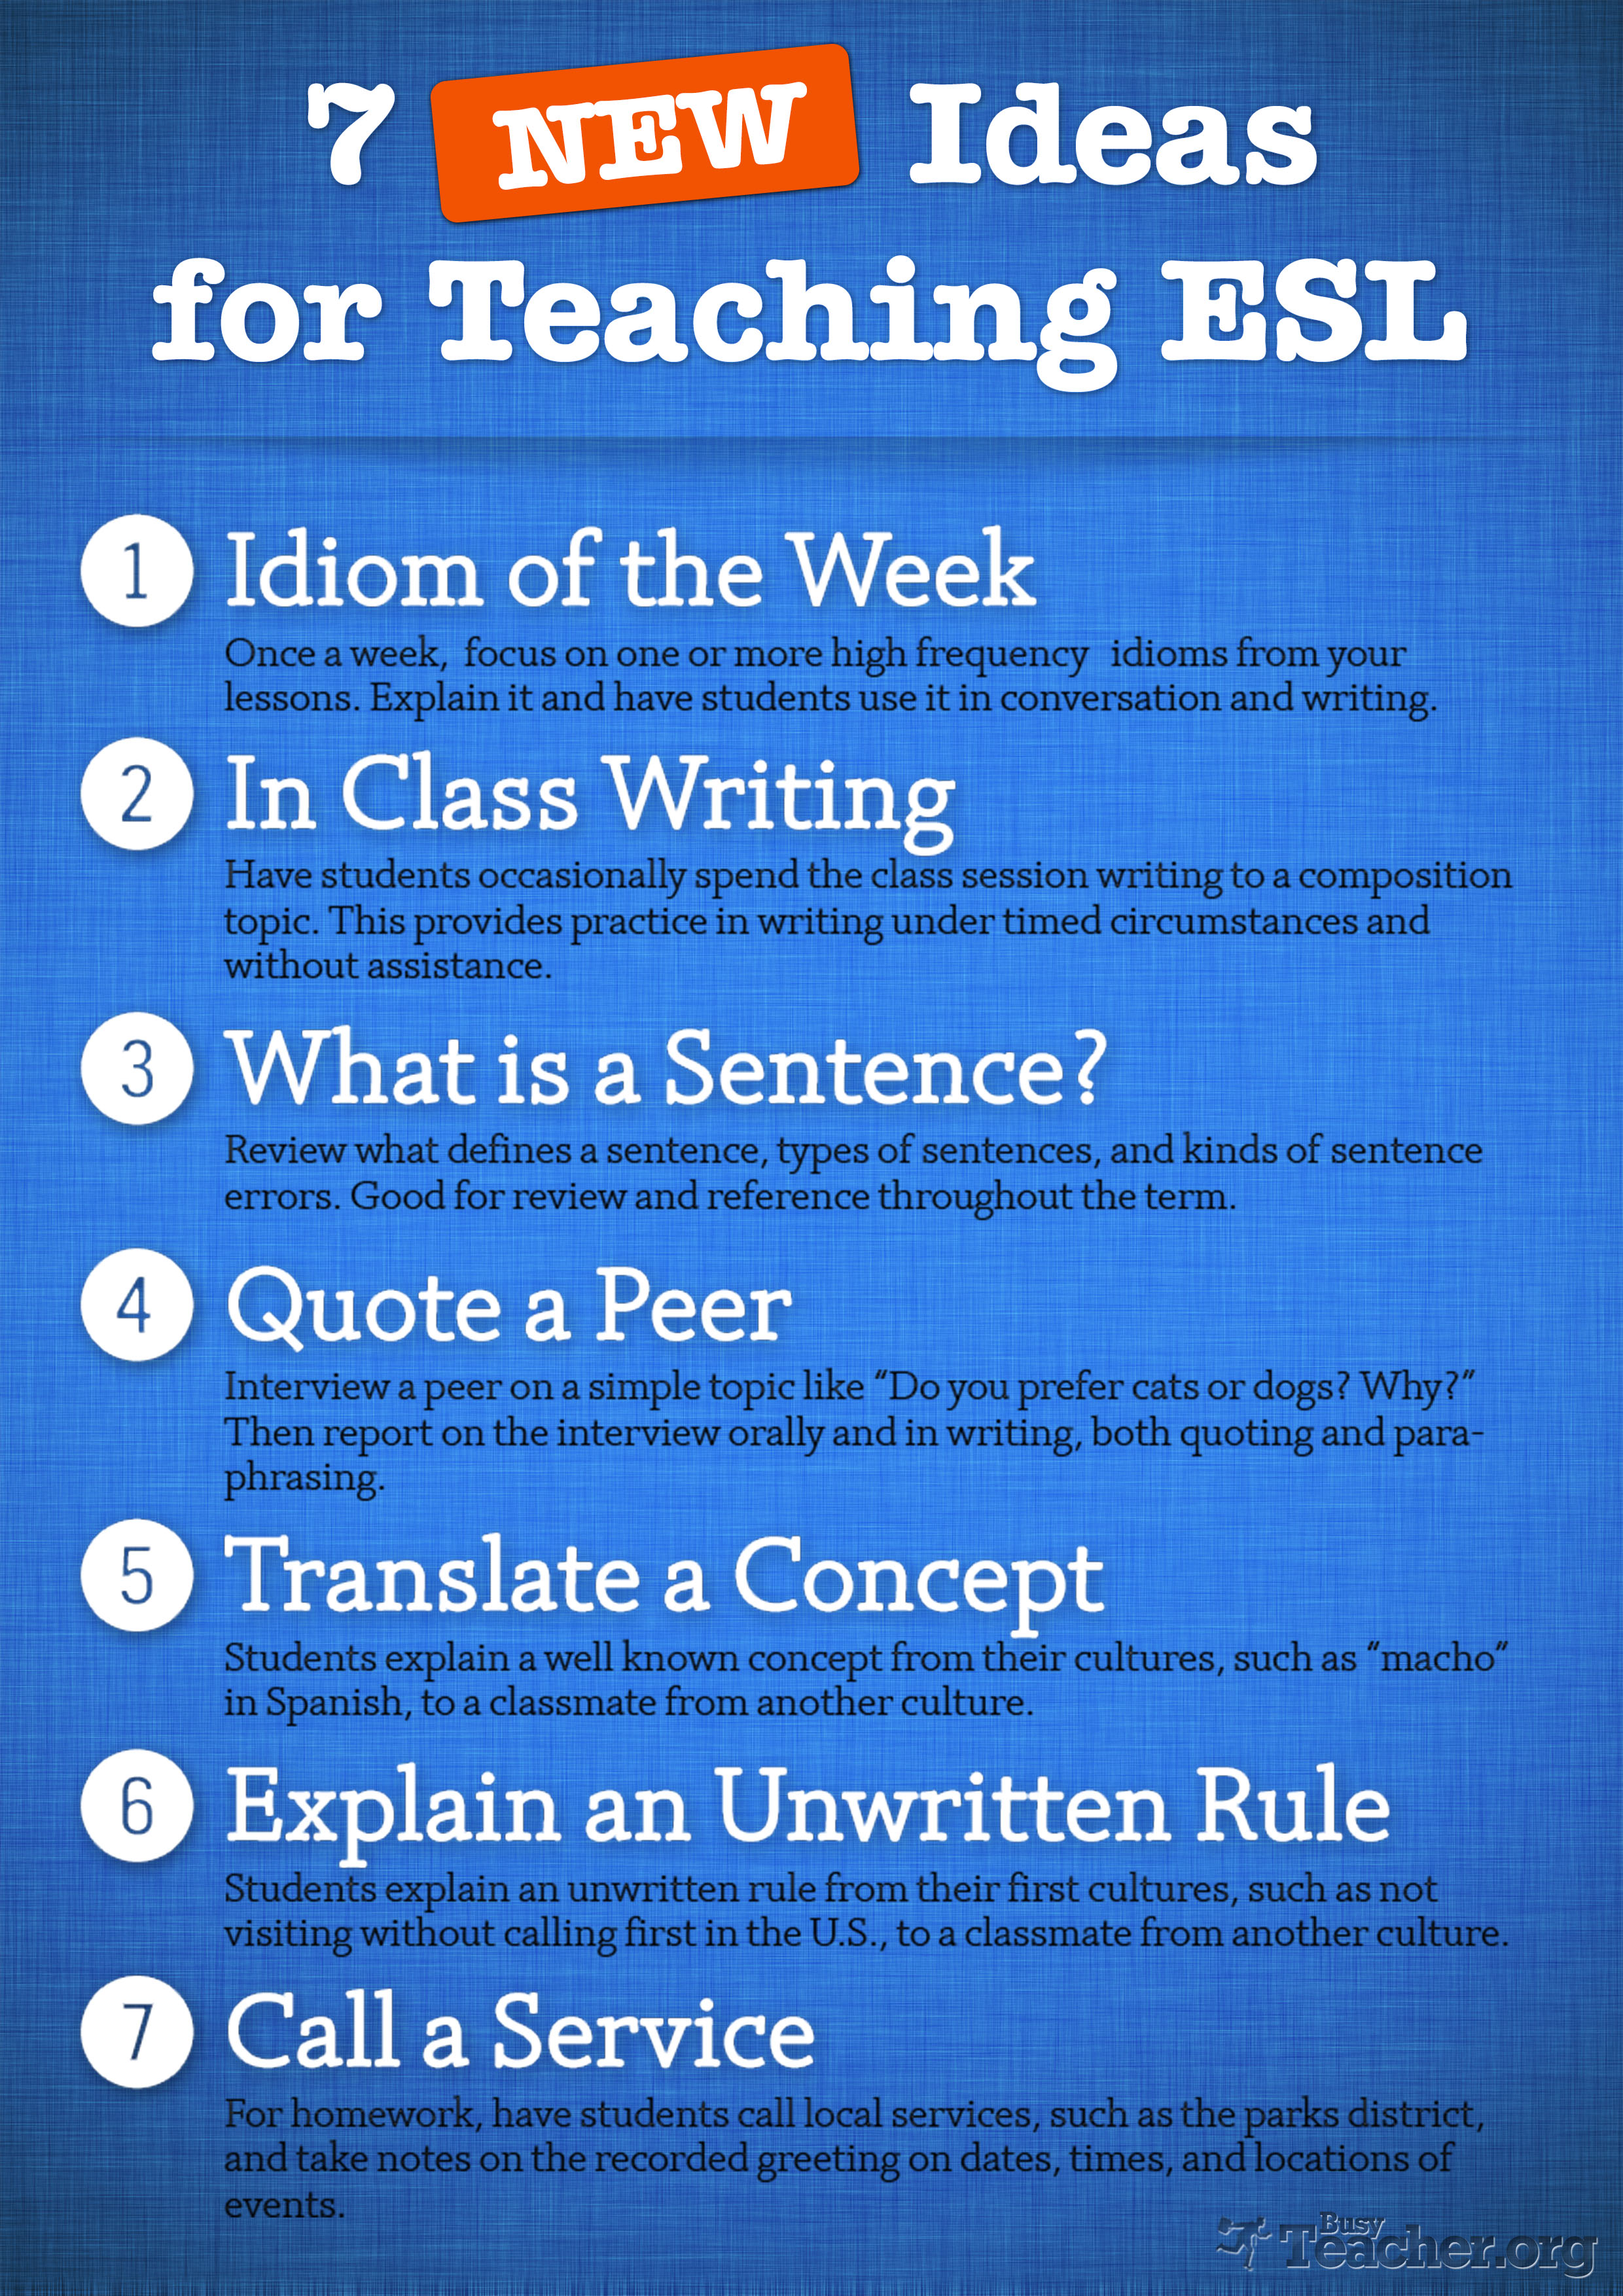 21 NEW Ideas For Teaching ESL: Poster